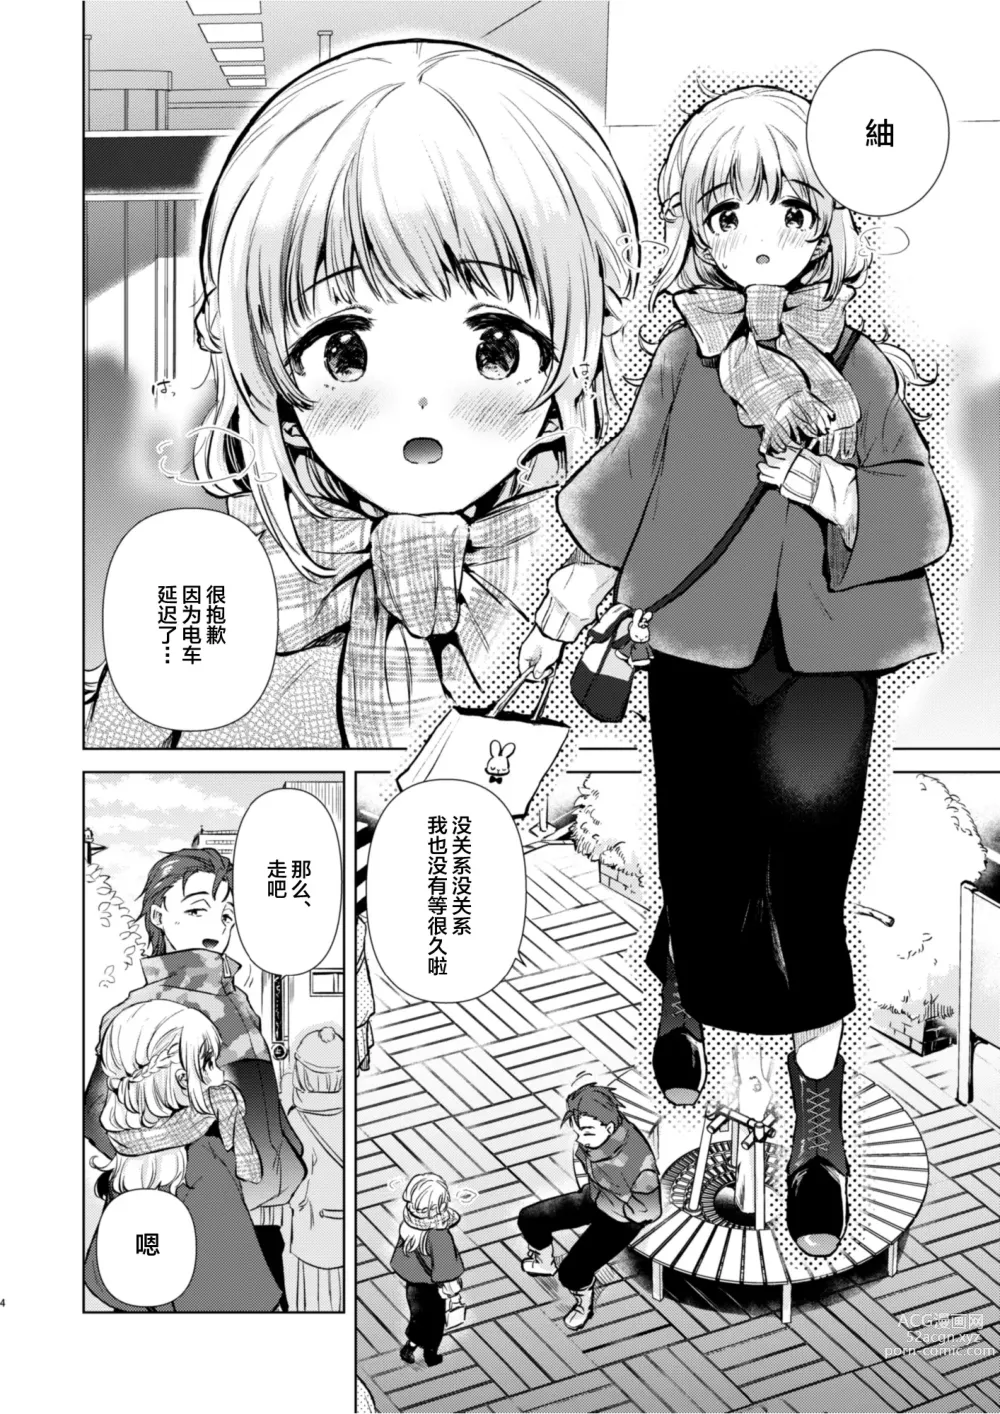 Page 3 of doujinshi Tsumugi-chan no Seichouki